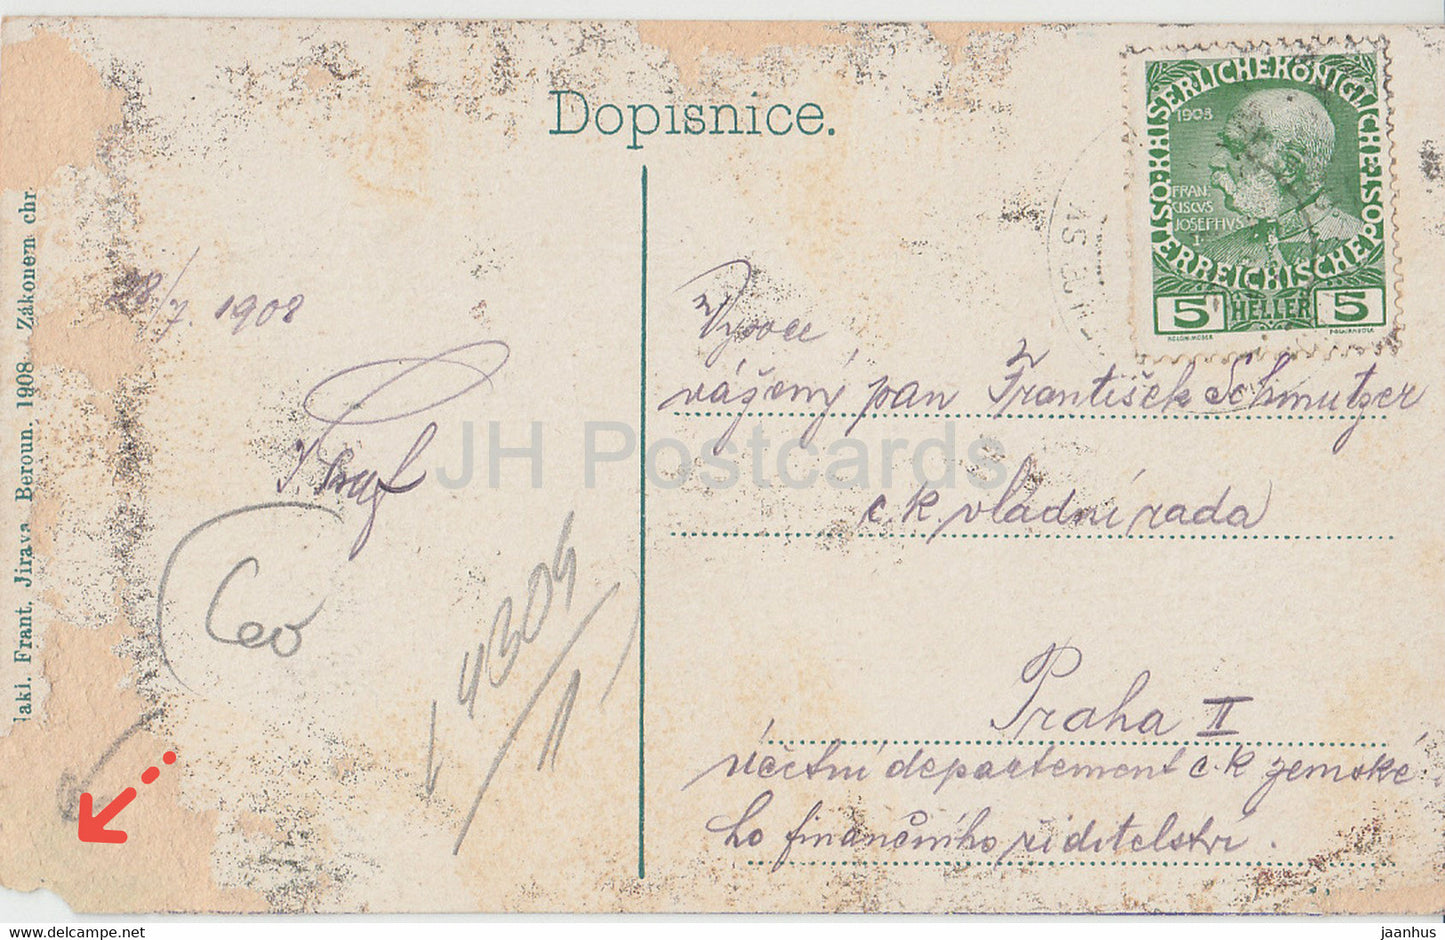 Sv Jan pod Skalou - carte postale ancienne - 1908 - République tchèque - utilisé